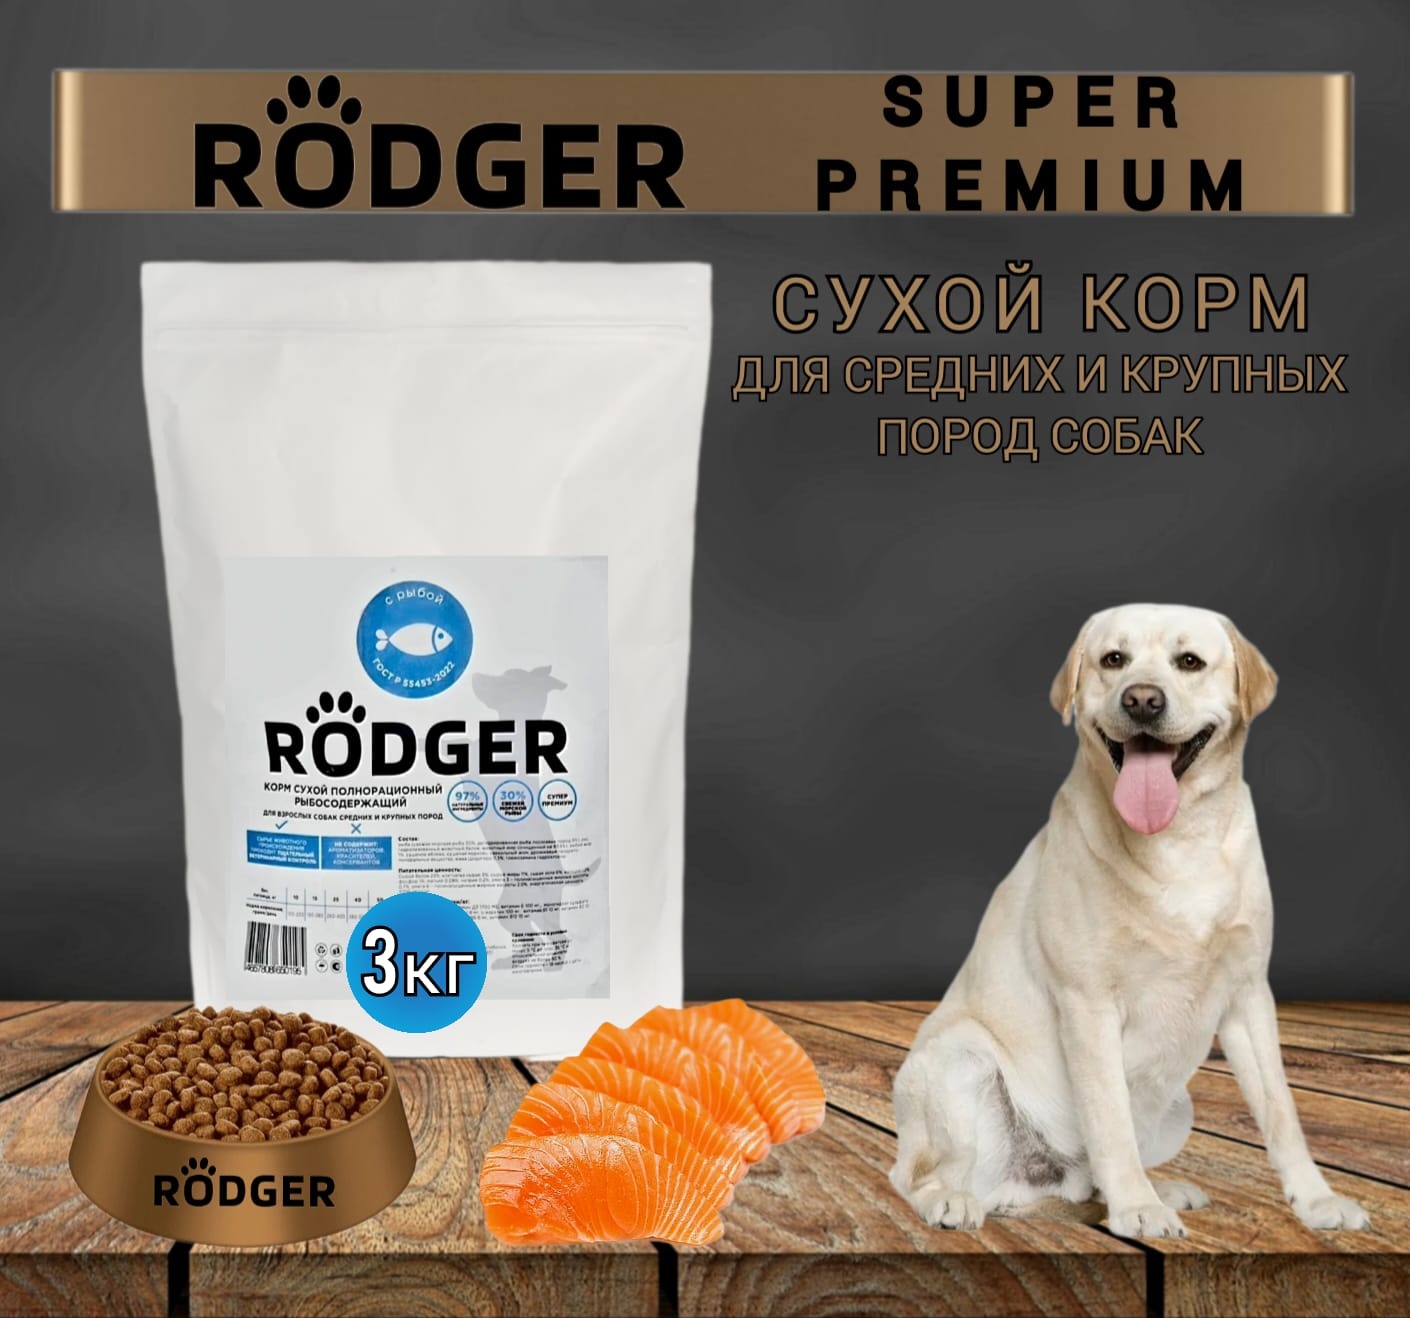 Сухой корм для собак RODGER Super Premium, для средних и крупных пород, рыба, 3 кг